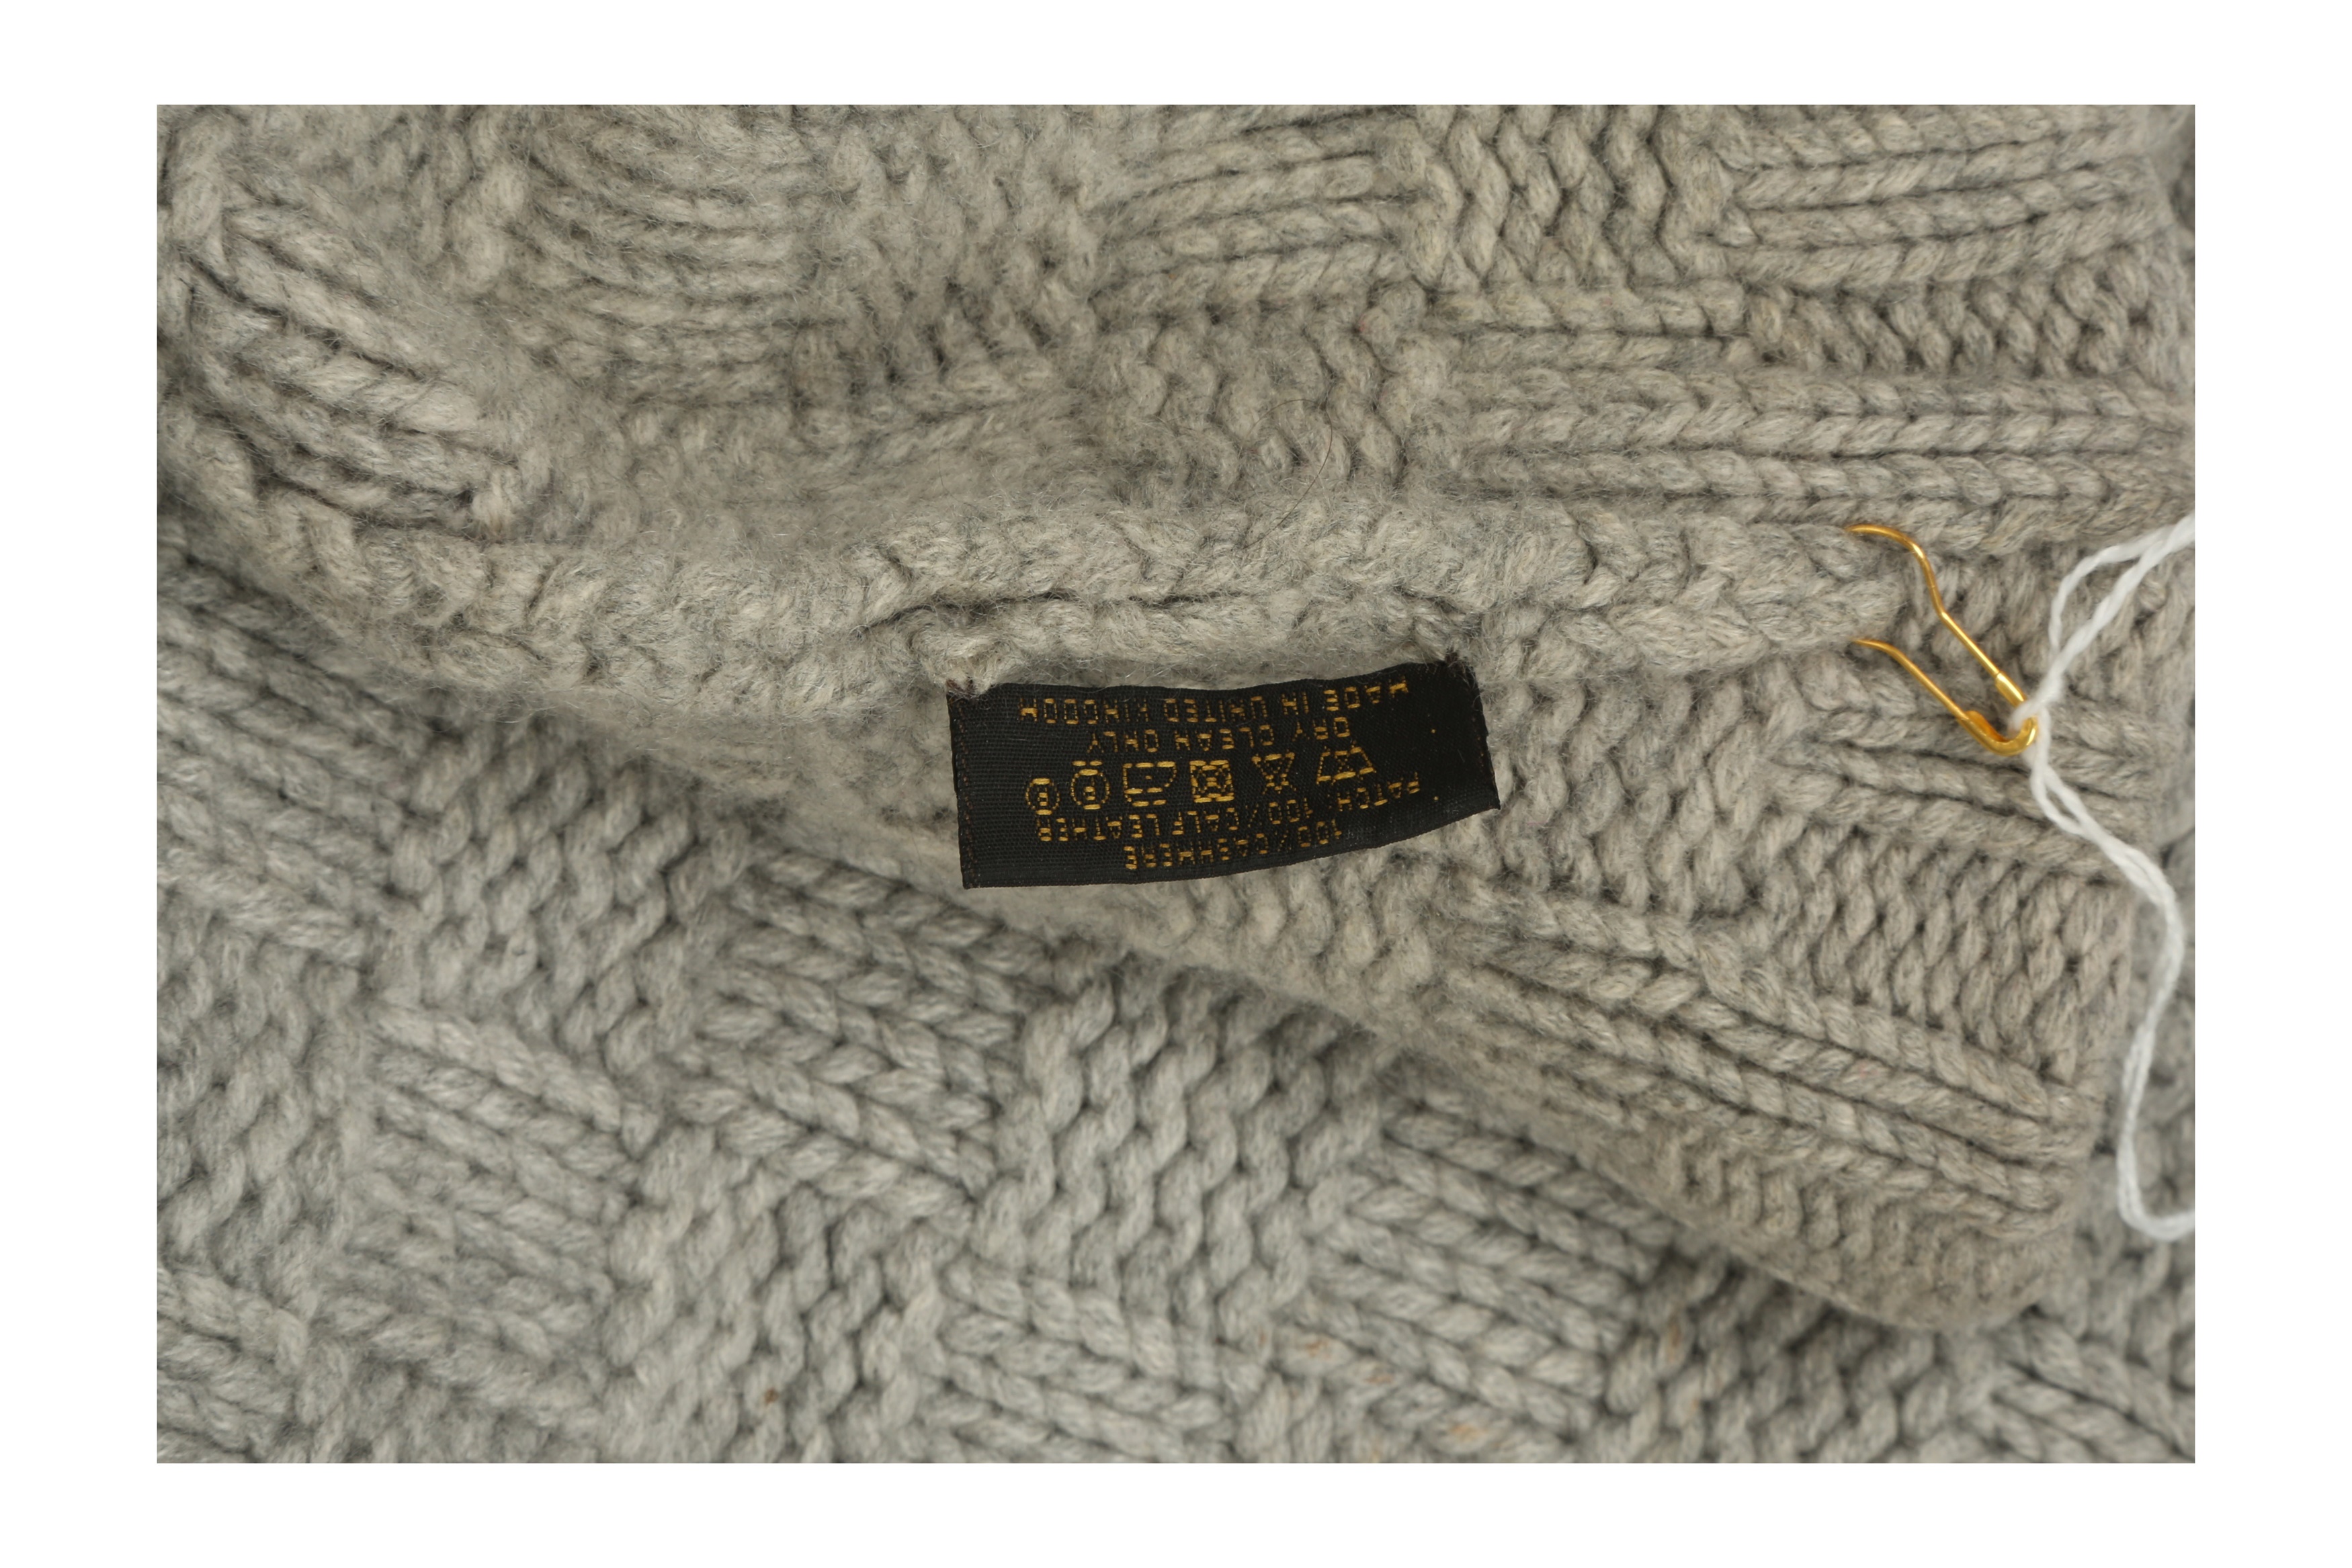 Sold at Auction: Louis Vuitton, Louis Vuitton Grey Cashmere Knit Hat